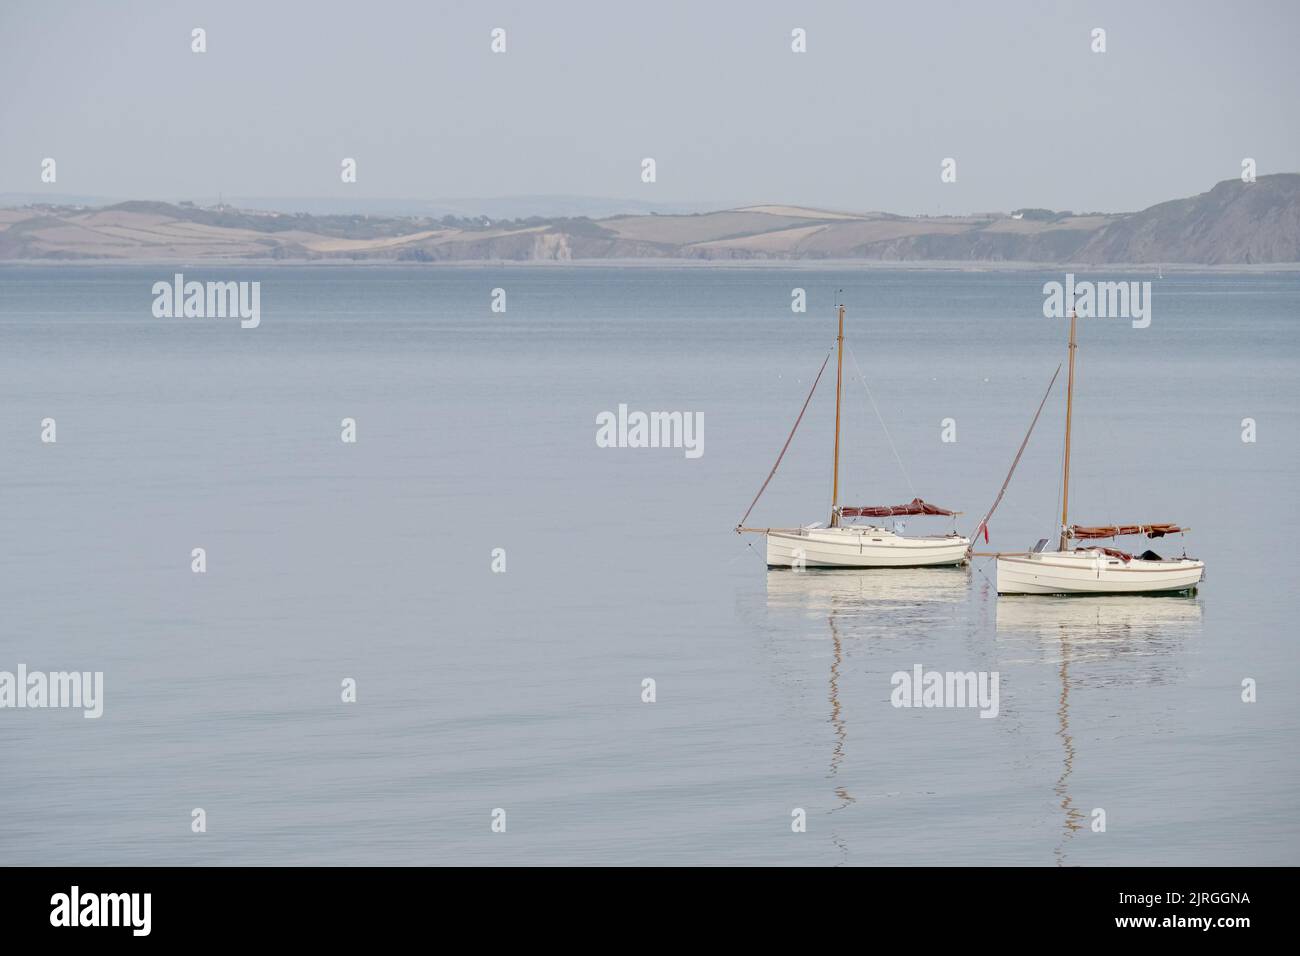 Due barche a vela molto simili su acque calme con riflessione. Sereno scenario tranquillo. Foto Stock